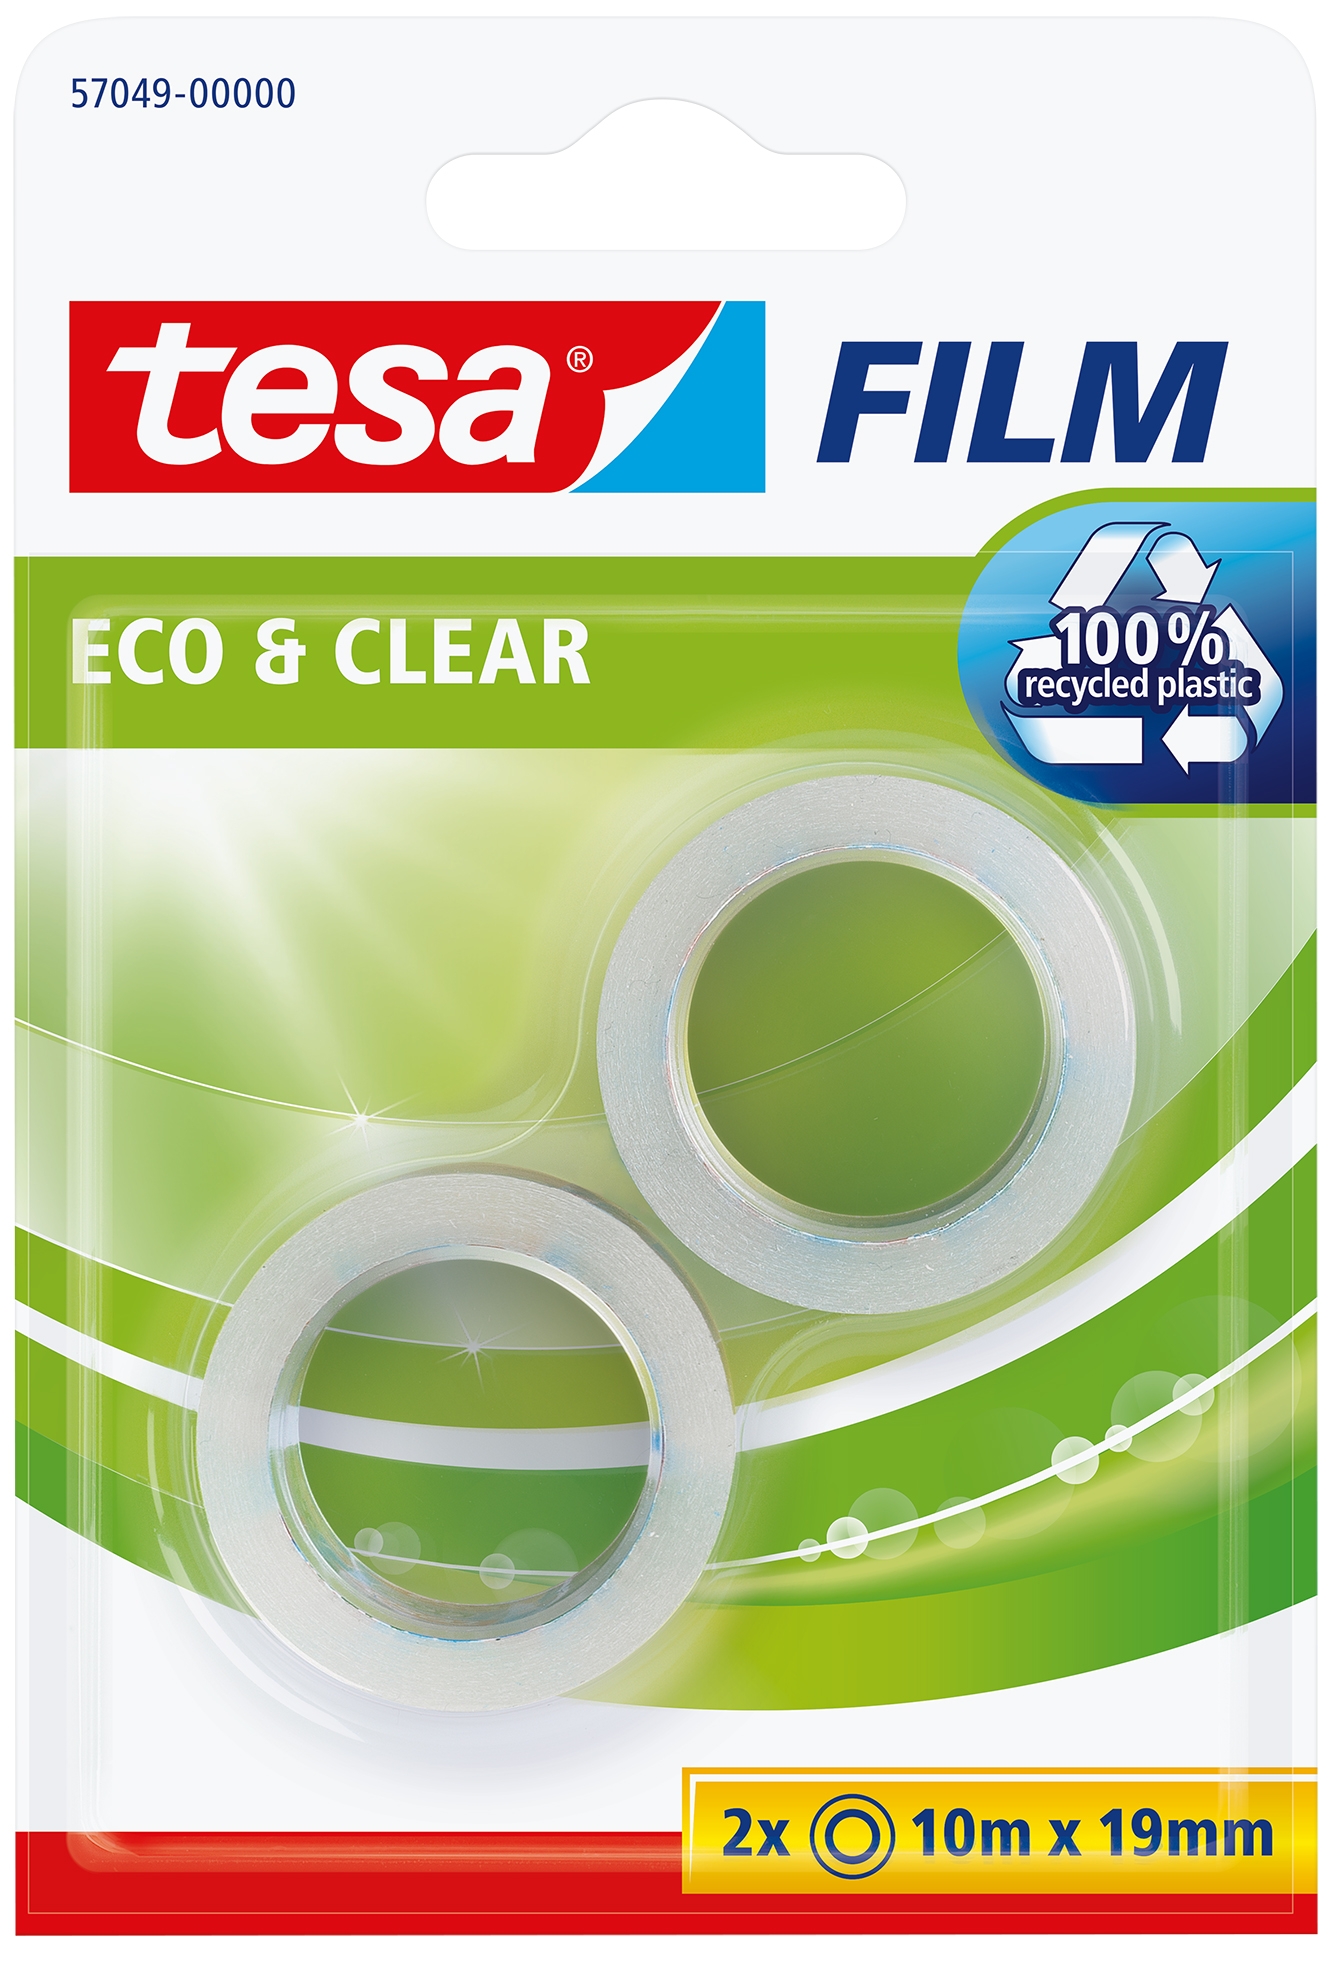 tesa Film Eco & Clear - Klebefilm Nachfüllung transparent, umweltfreundlich, 10m x 19mm, 2 Rollen 